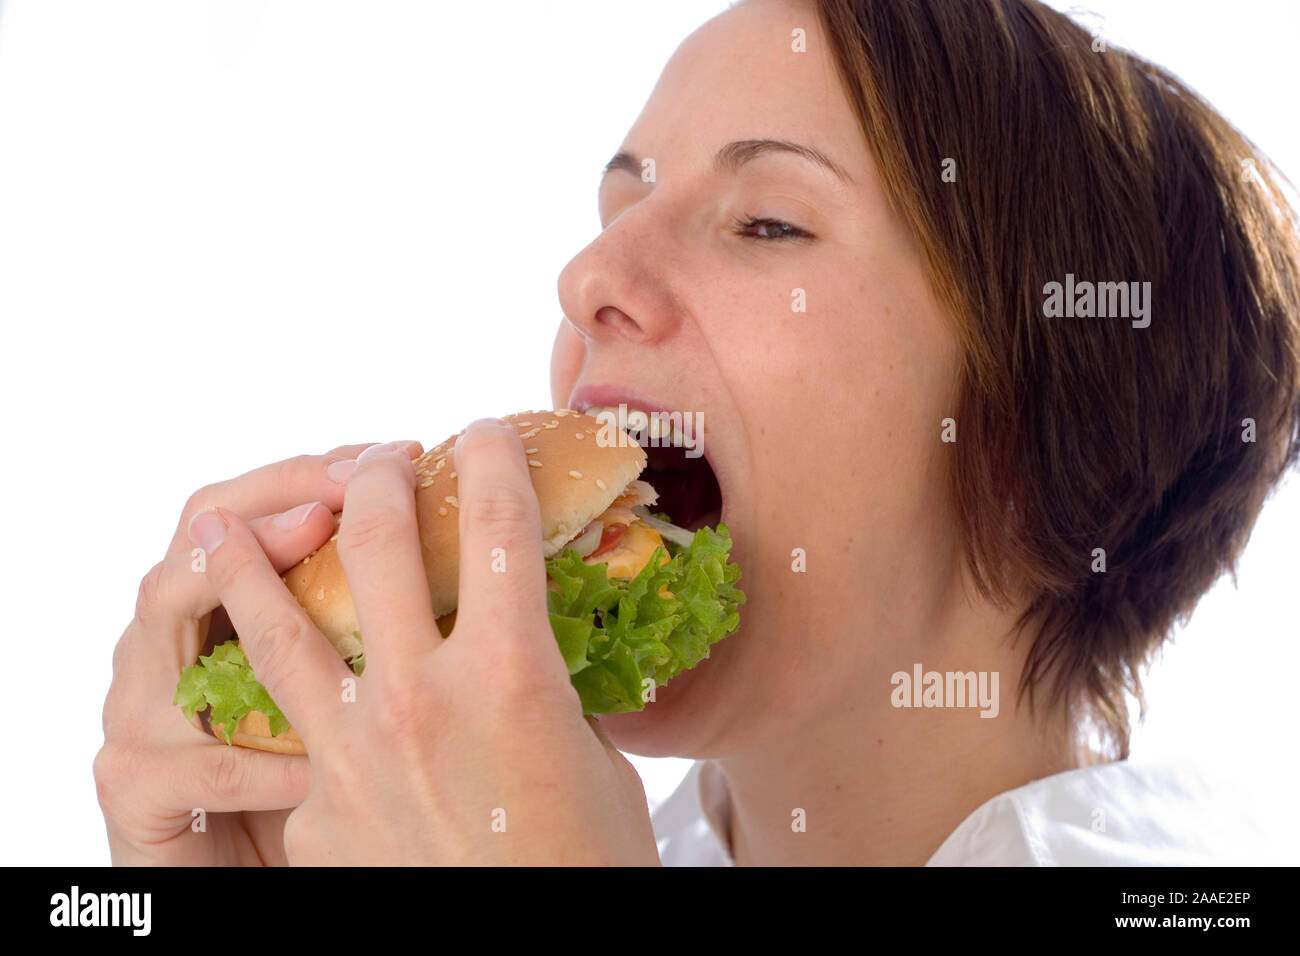 Frau isst einen Hamburger (mr) Stock Photo